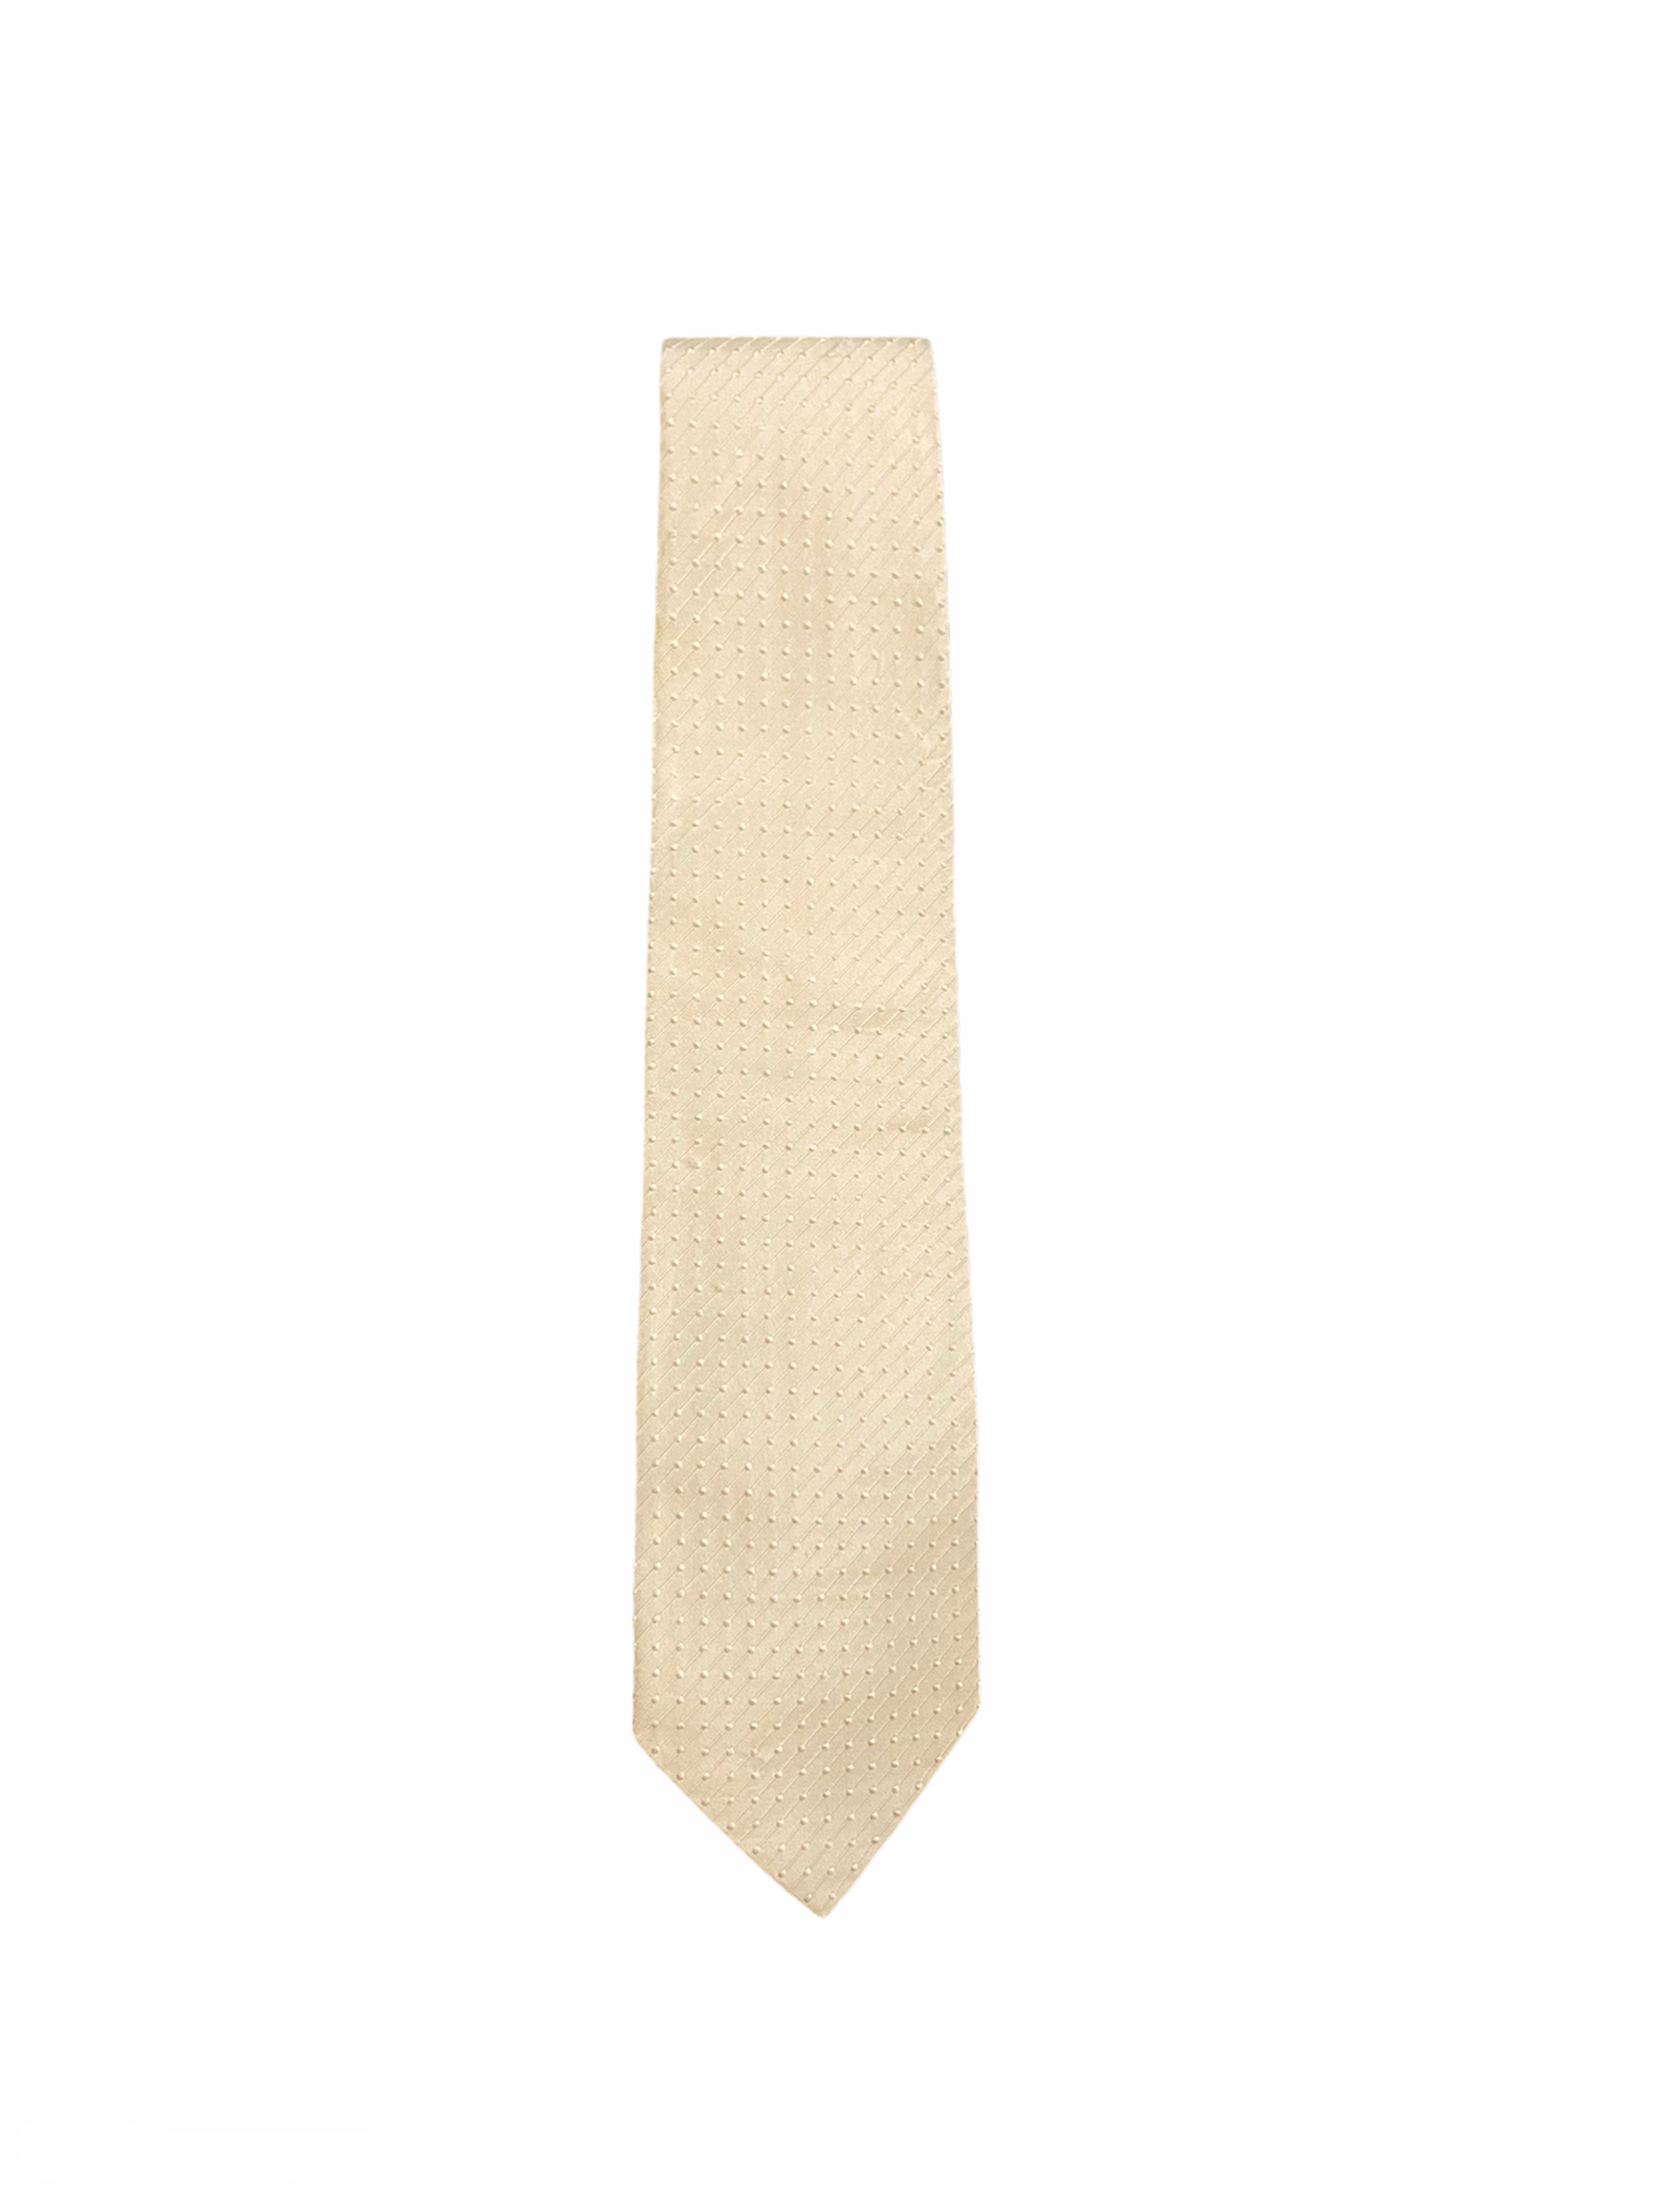 Cravate Hugo Boss blanc cassé/écrue, en soie, Made in Italy, motif en relief à pois ton sur ton. 